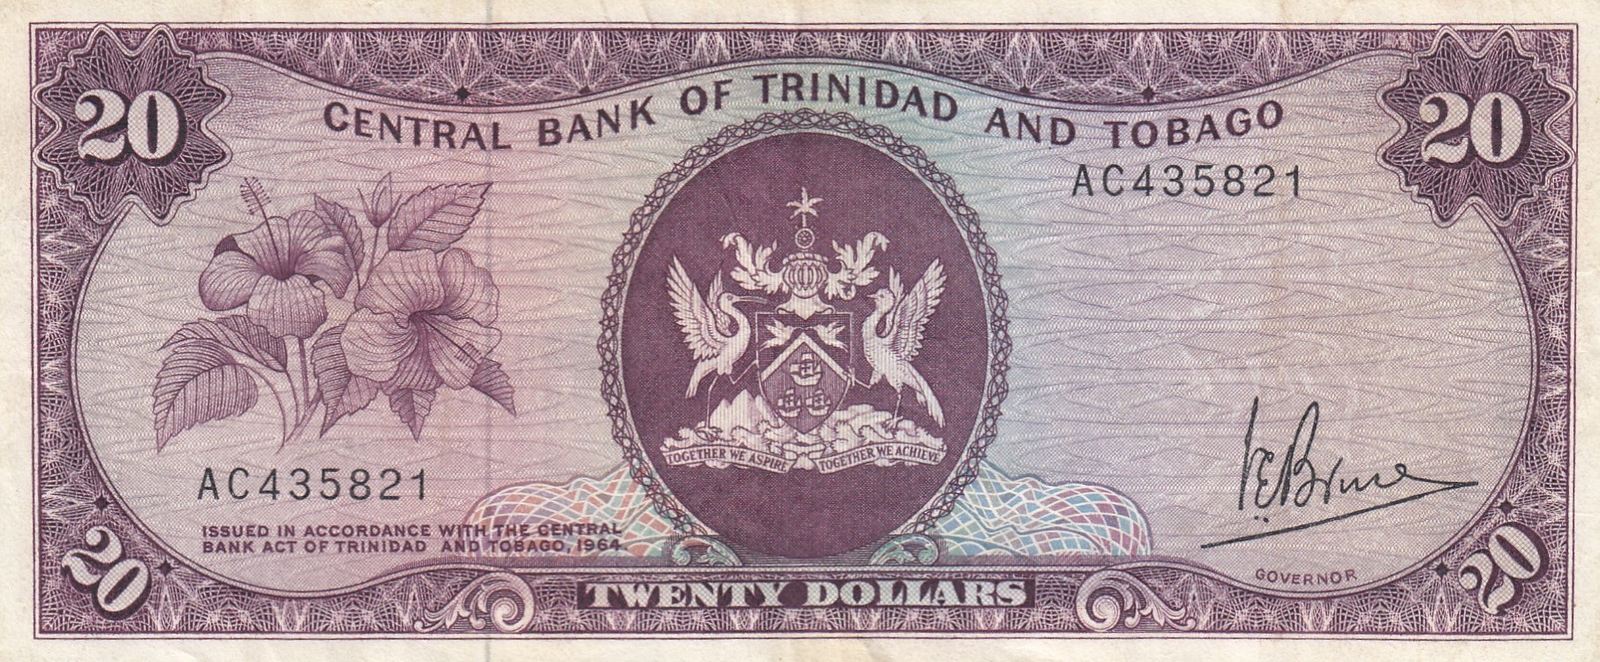 Купюры мм. 20 Долларов Тринидад и Тобаго 1964. 100 Долларов Тринидад и Тобаго 1964. Central Bank of Trinidad and Tobago. 20 Долларов Тринидад и Тобаго.